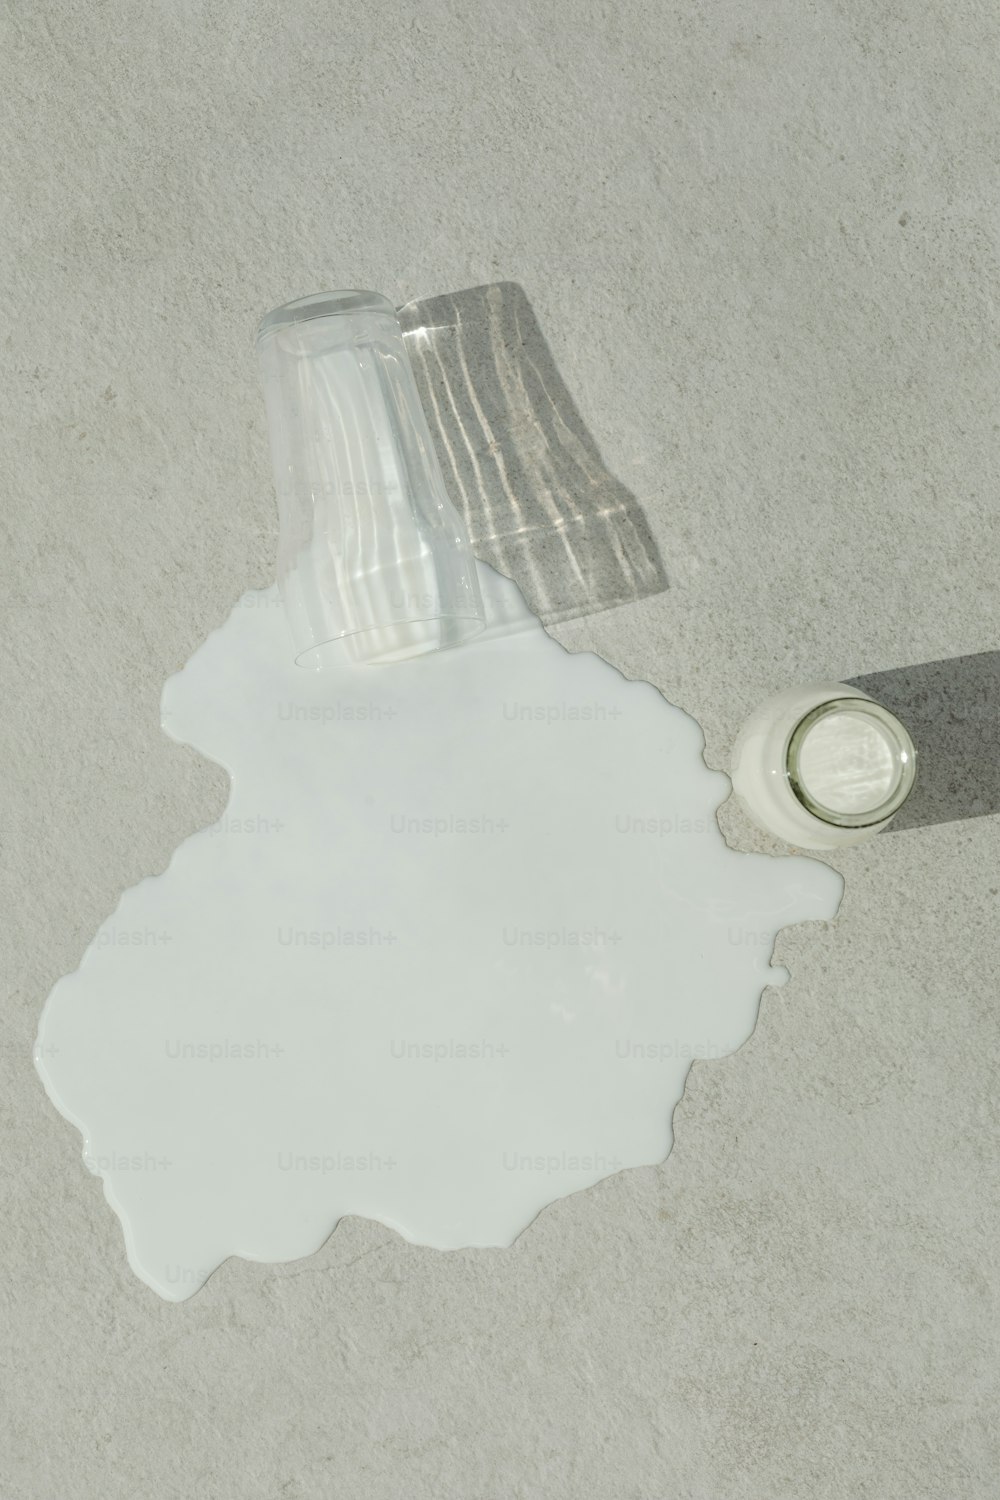 Una lata de pintura sentada en el suelo junto a una lata de pintura